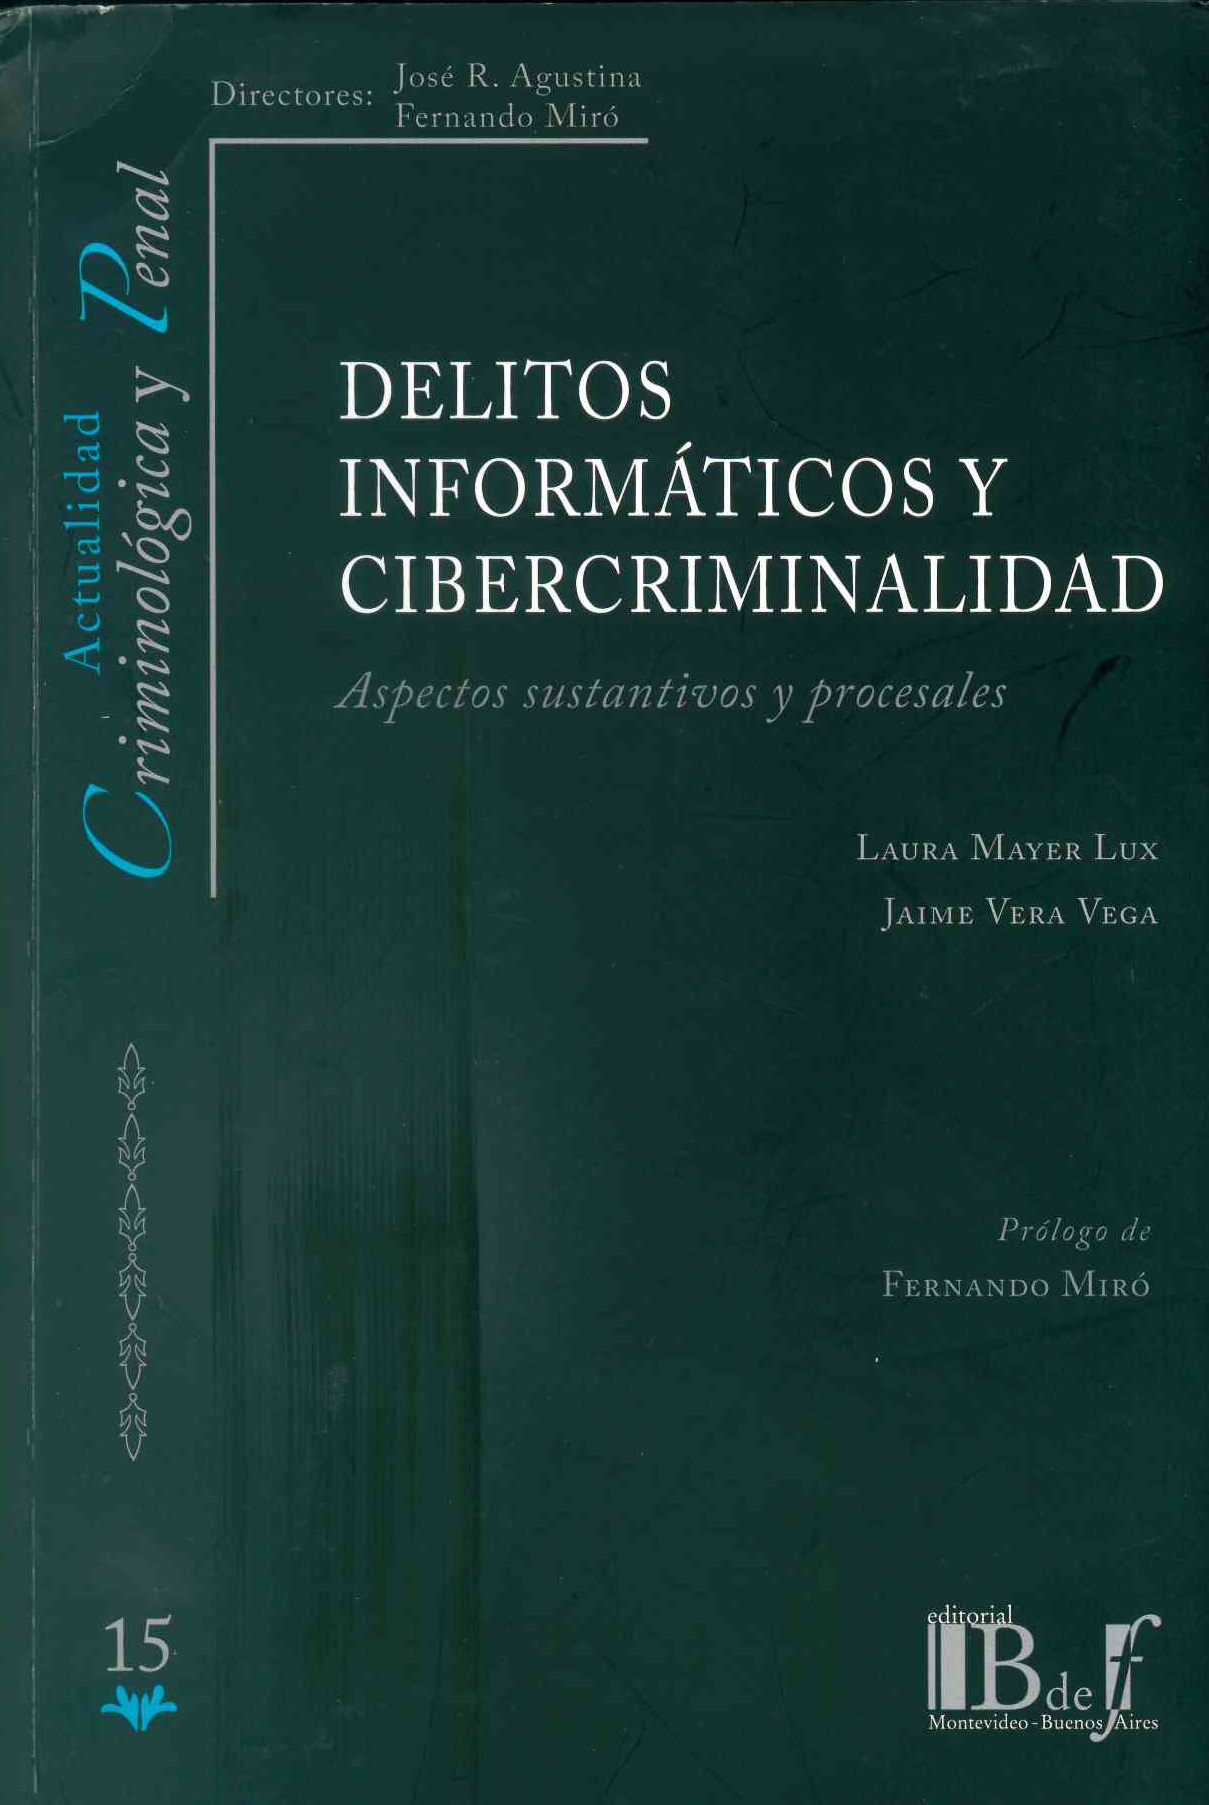 Delitos informáticos y cibercriminlidad: aspectos sustantivos y procesales